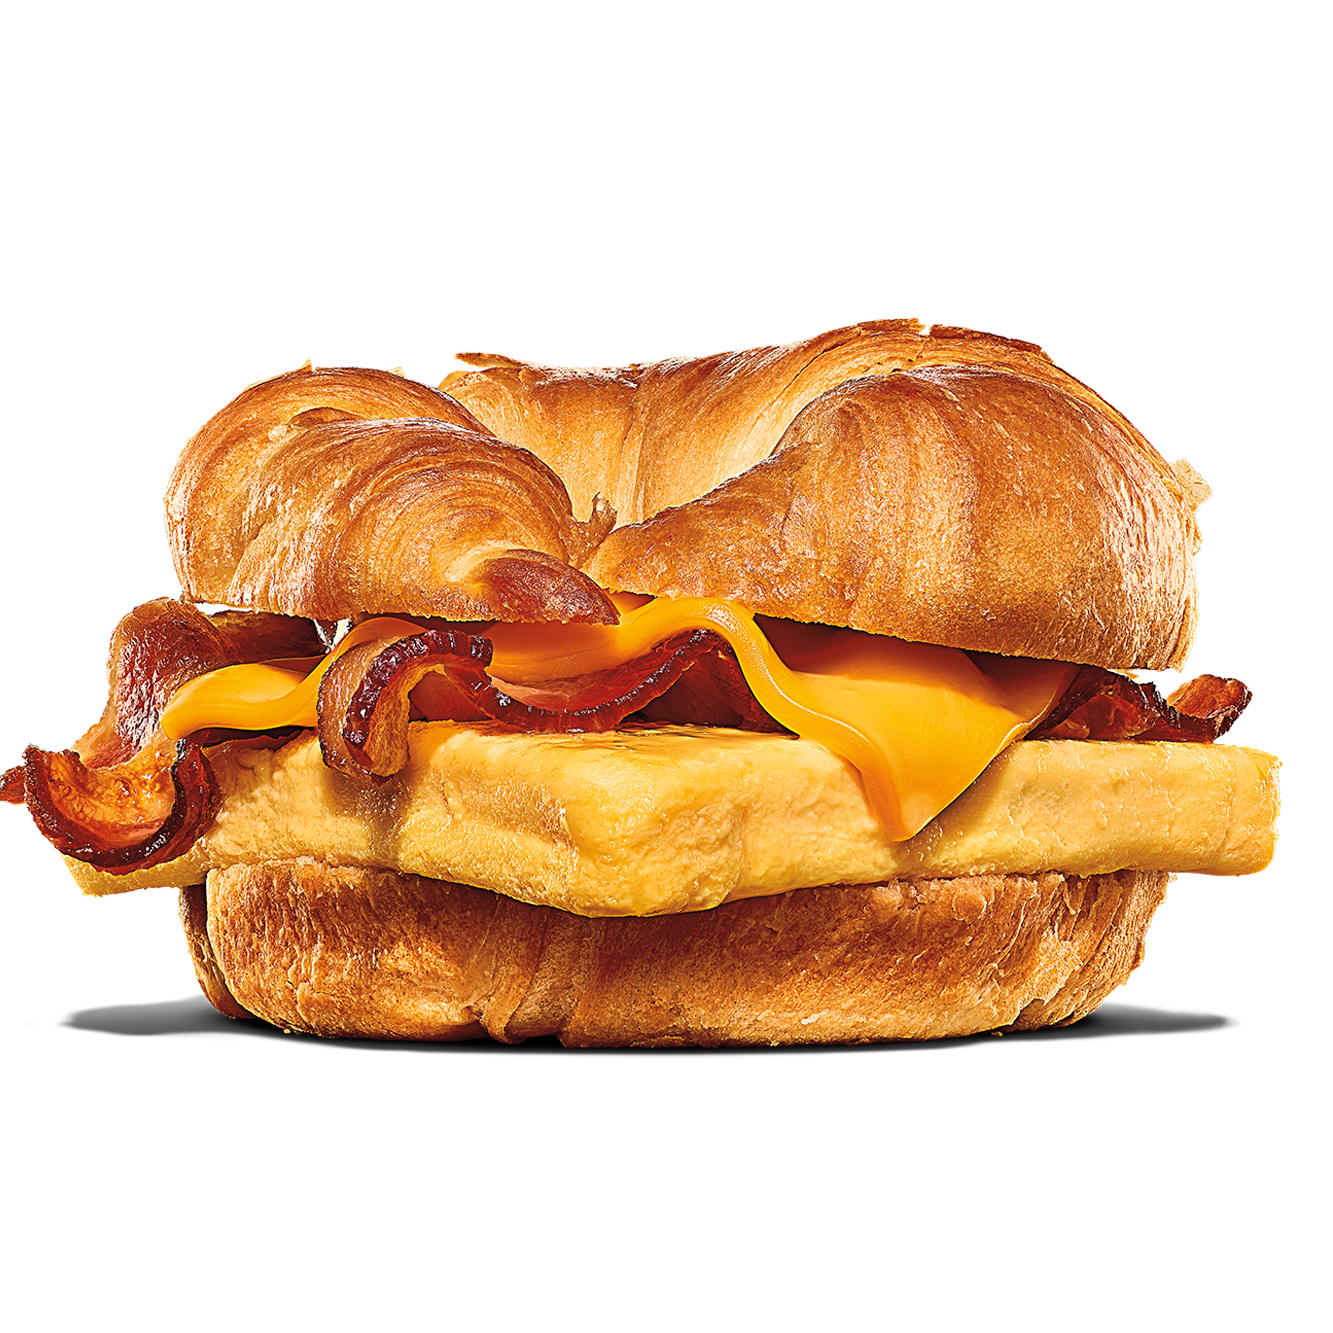 Burger King Ocala (352)690-2074